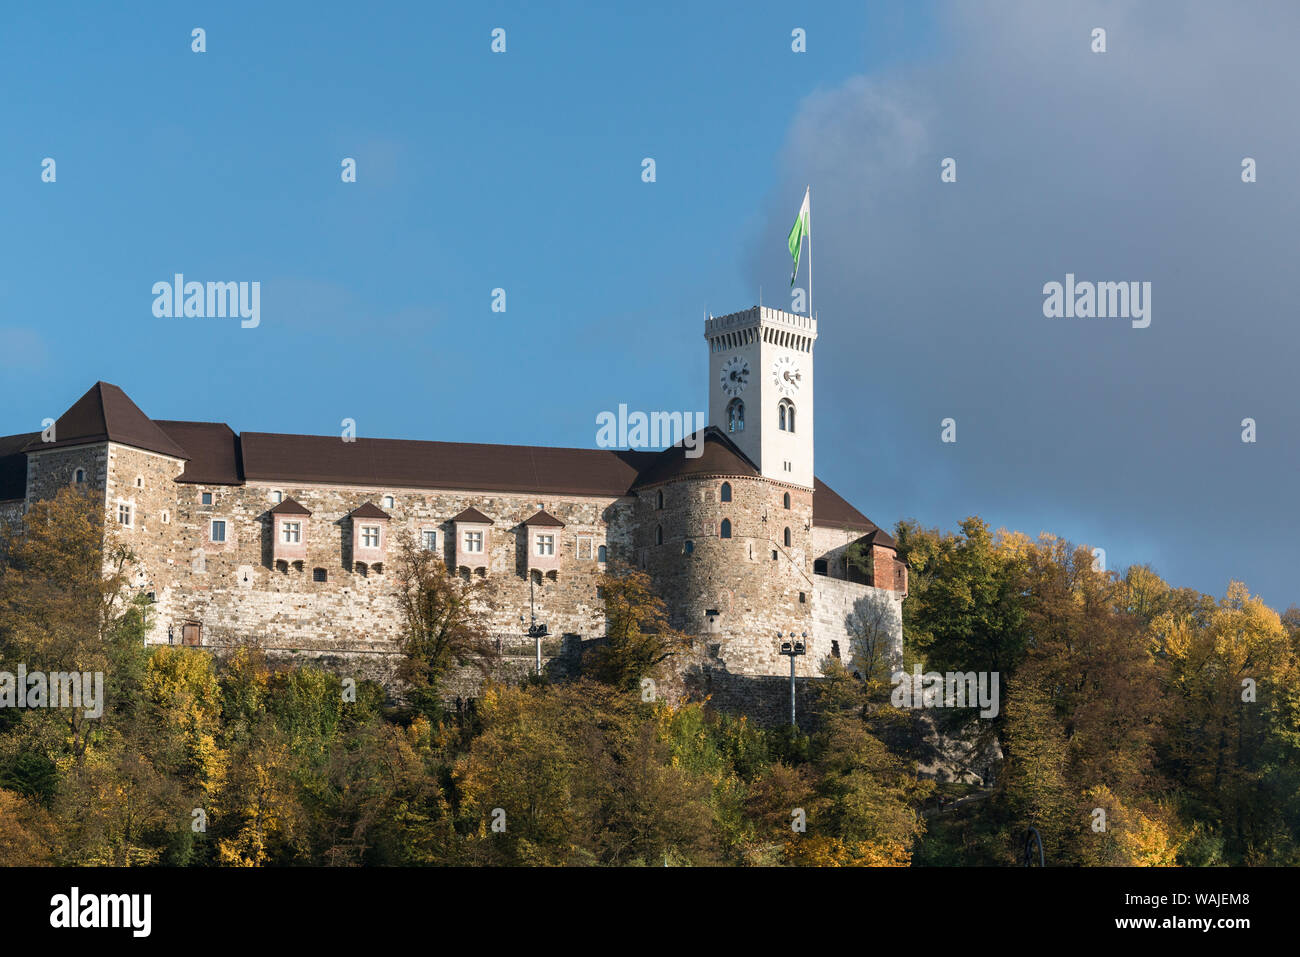 Slovenia, Ljubljana. The Castle sitting atop a rocky promontory above the city. Stock Photo